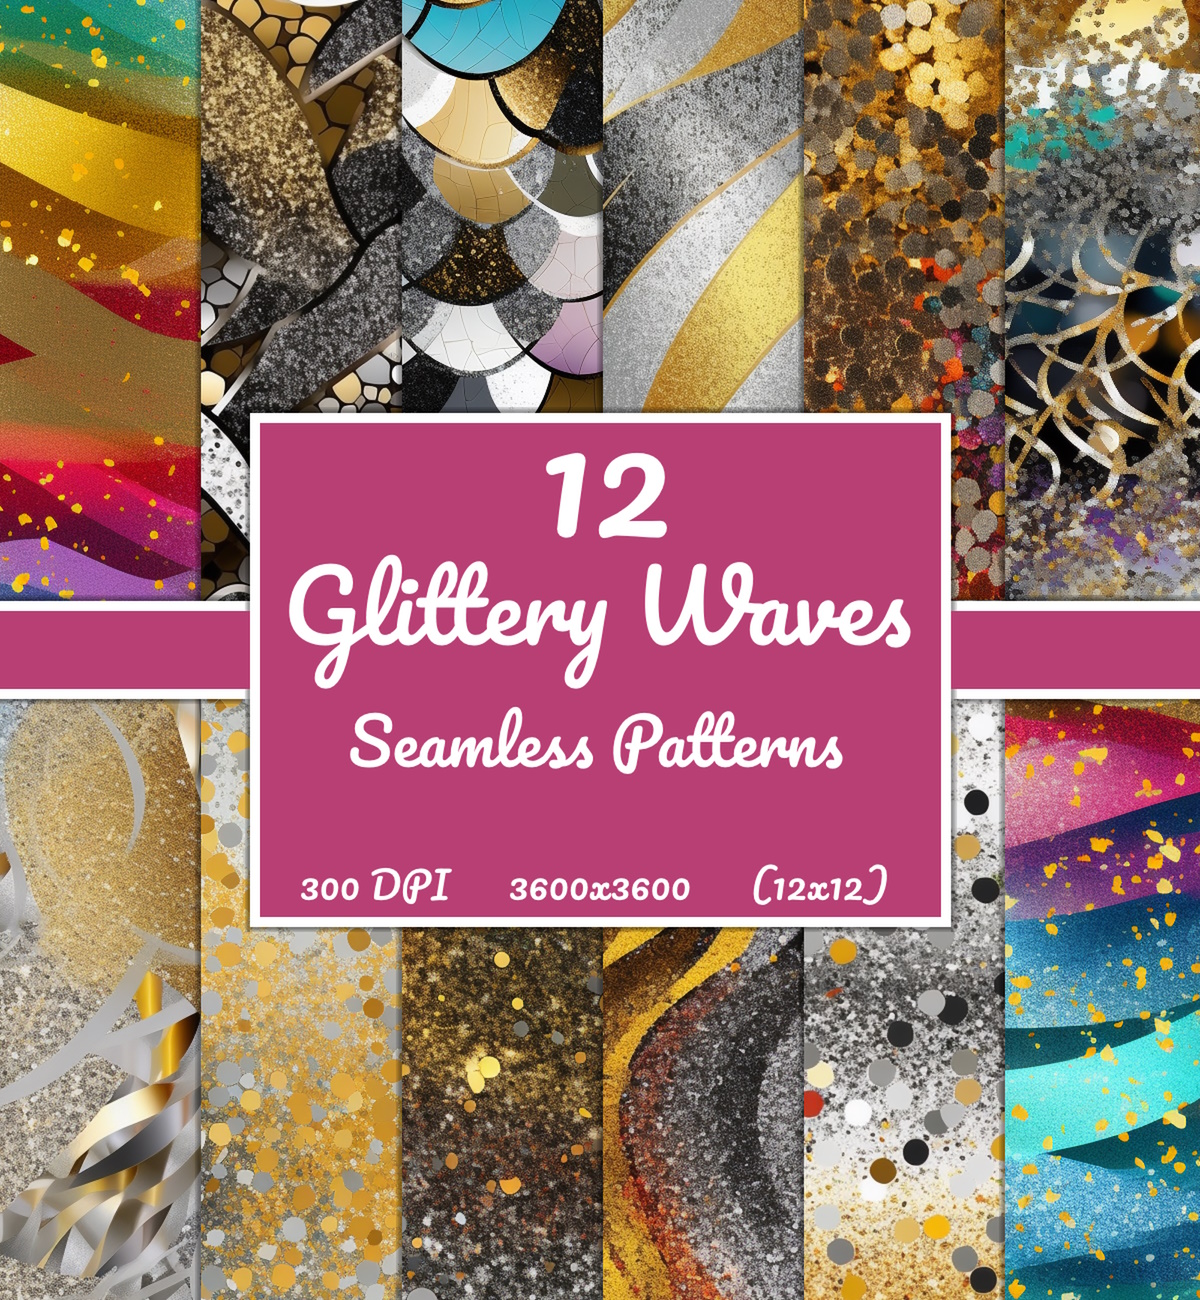 Glittery Waves Seamless Patterns